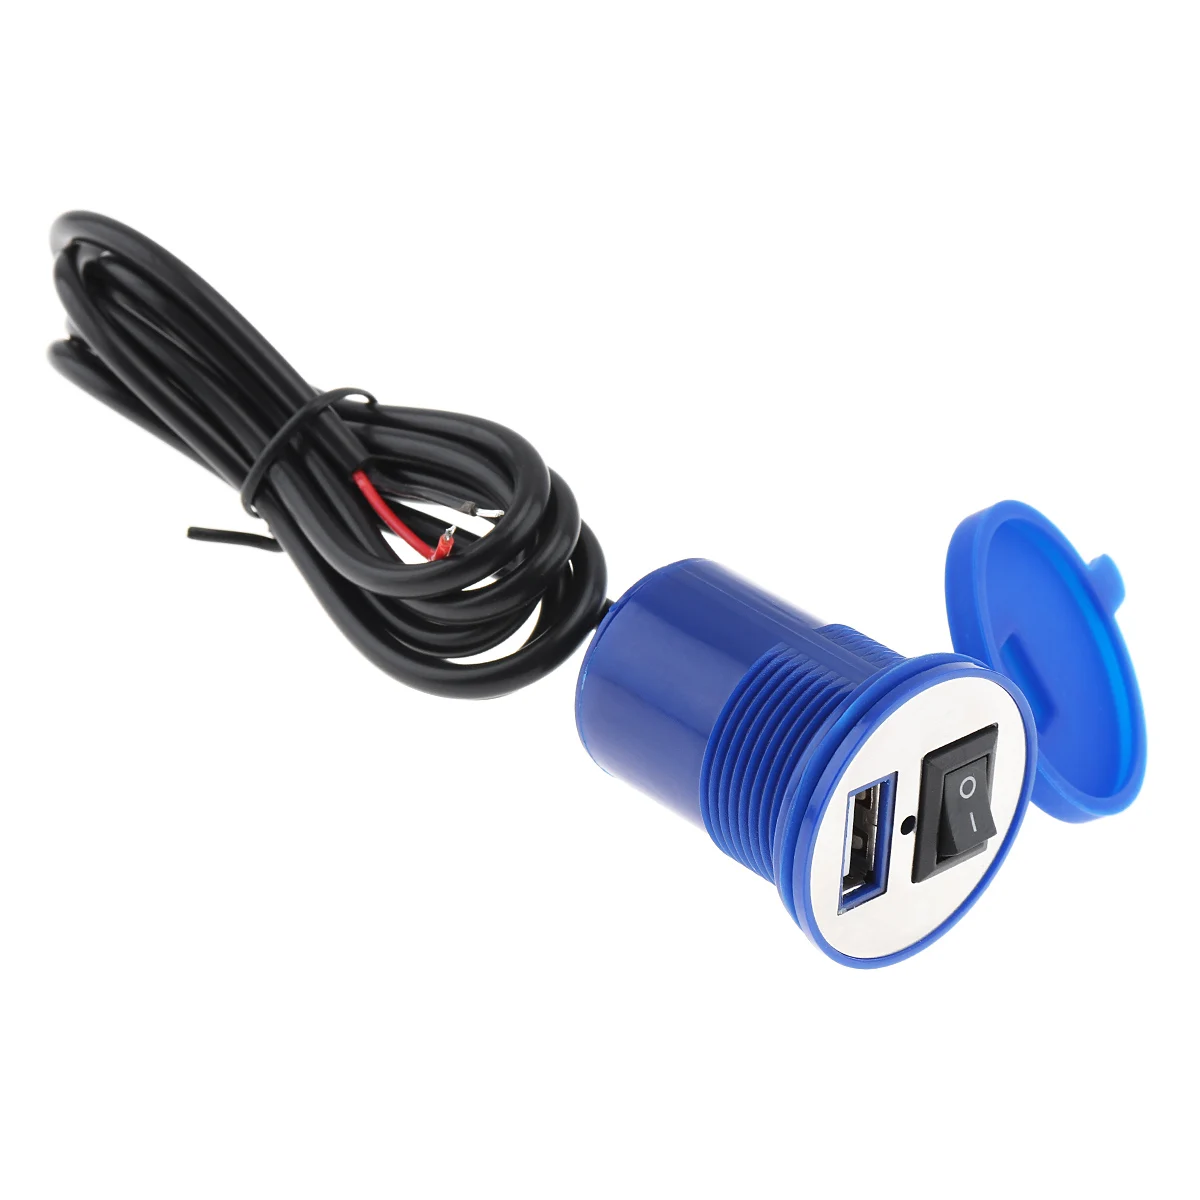 12V 2.1A водонепроницаемый мотоцикл Chager USB зарядное устройство для мобильного телефона с выключателем для кросс-велоспорта скутер электромобиль